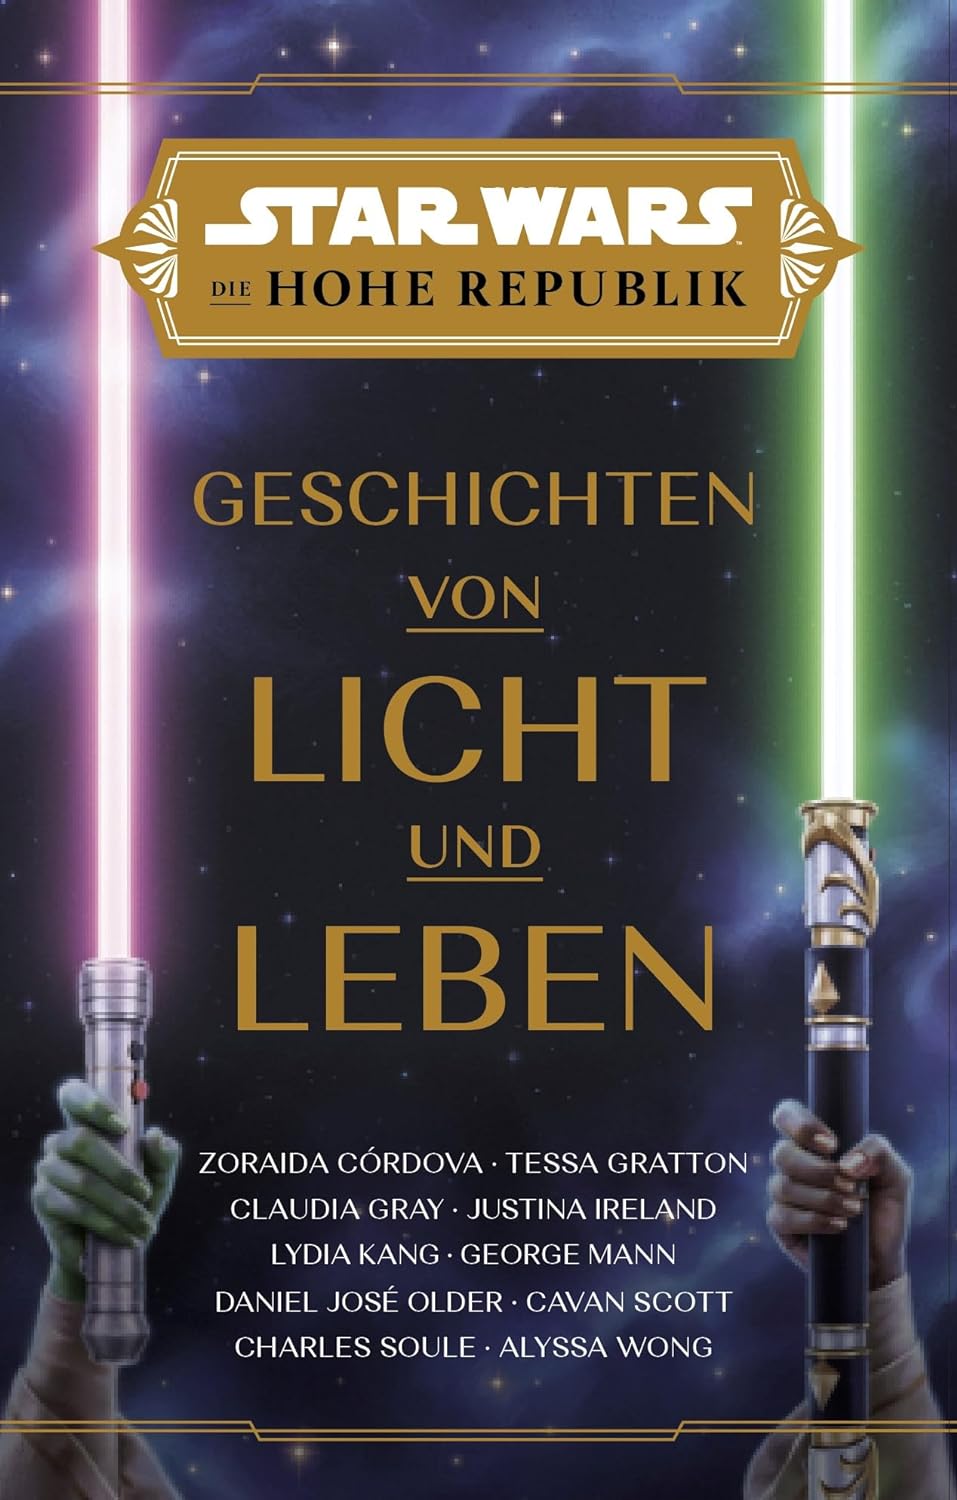 Rezension: "Star Wars - Die Hohe Republik: Geschichten von Licht und Leben" 4